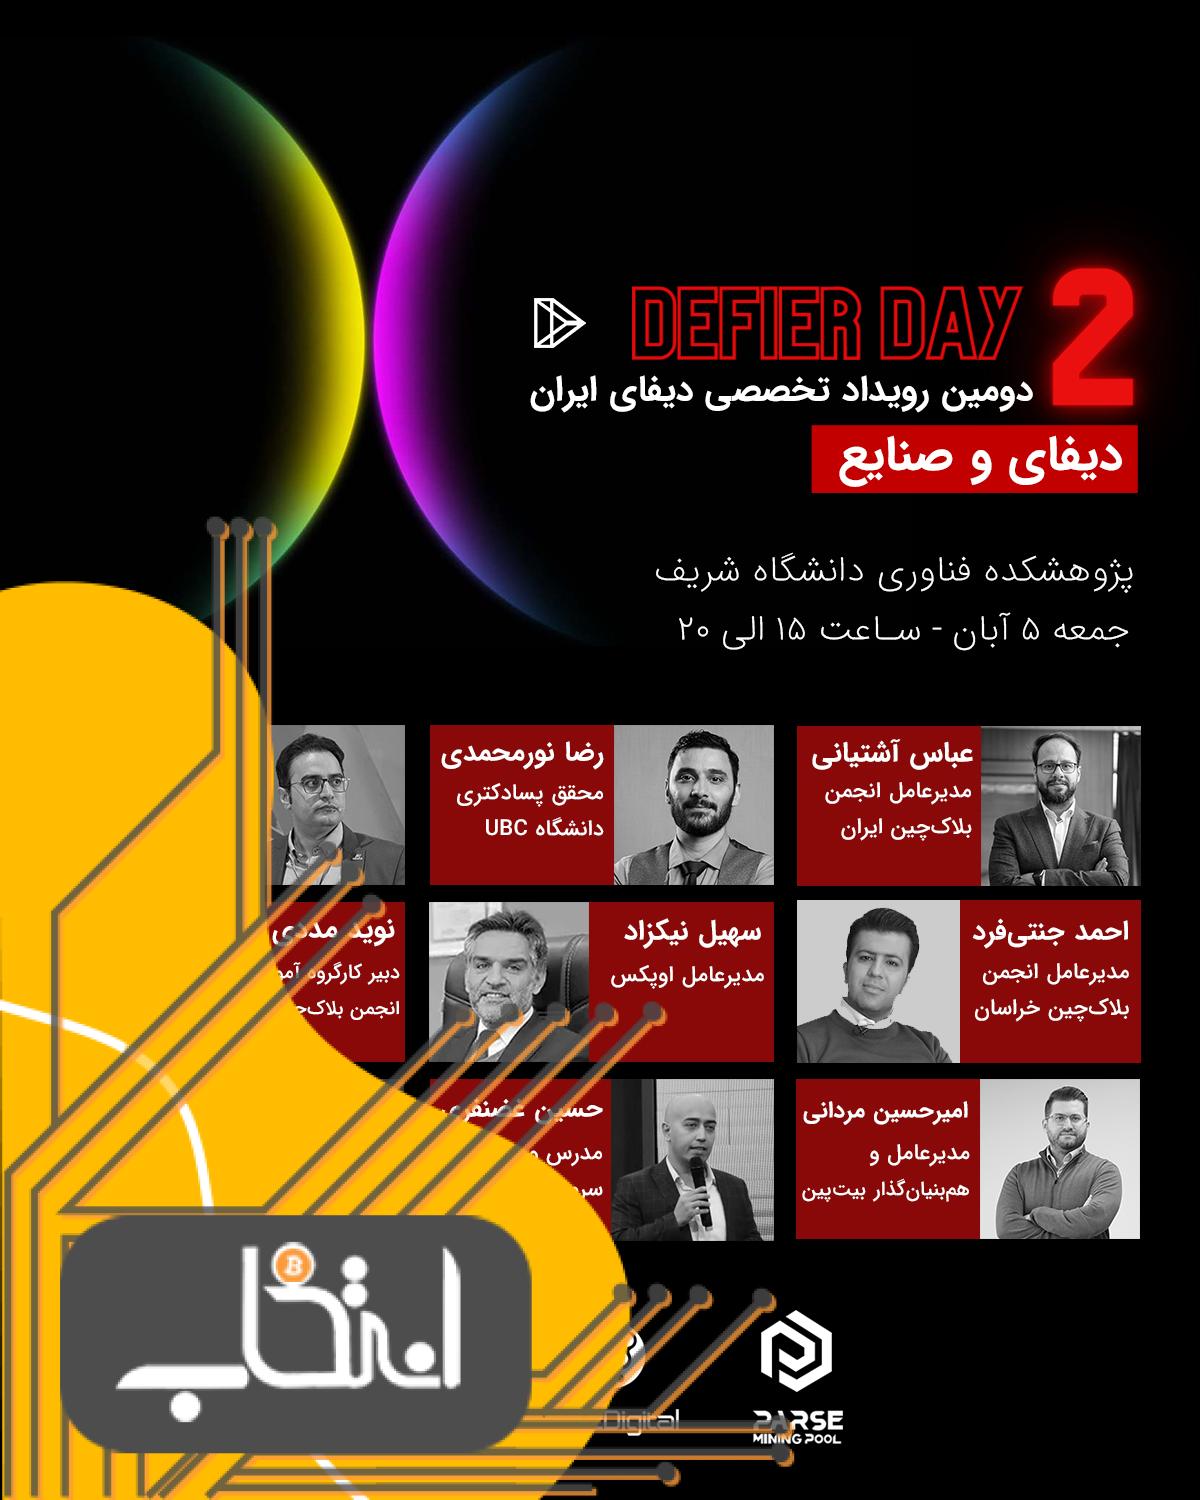 رونمایی از گزارش جامع ارزهای دیجیتال ایران در رویداد دیفایردِی؛ شمارش معکوس تا ۵ آبان